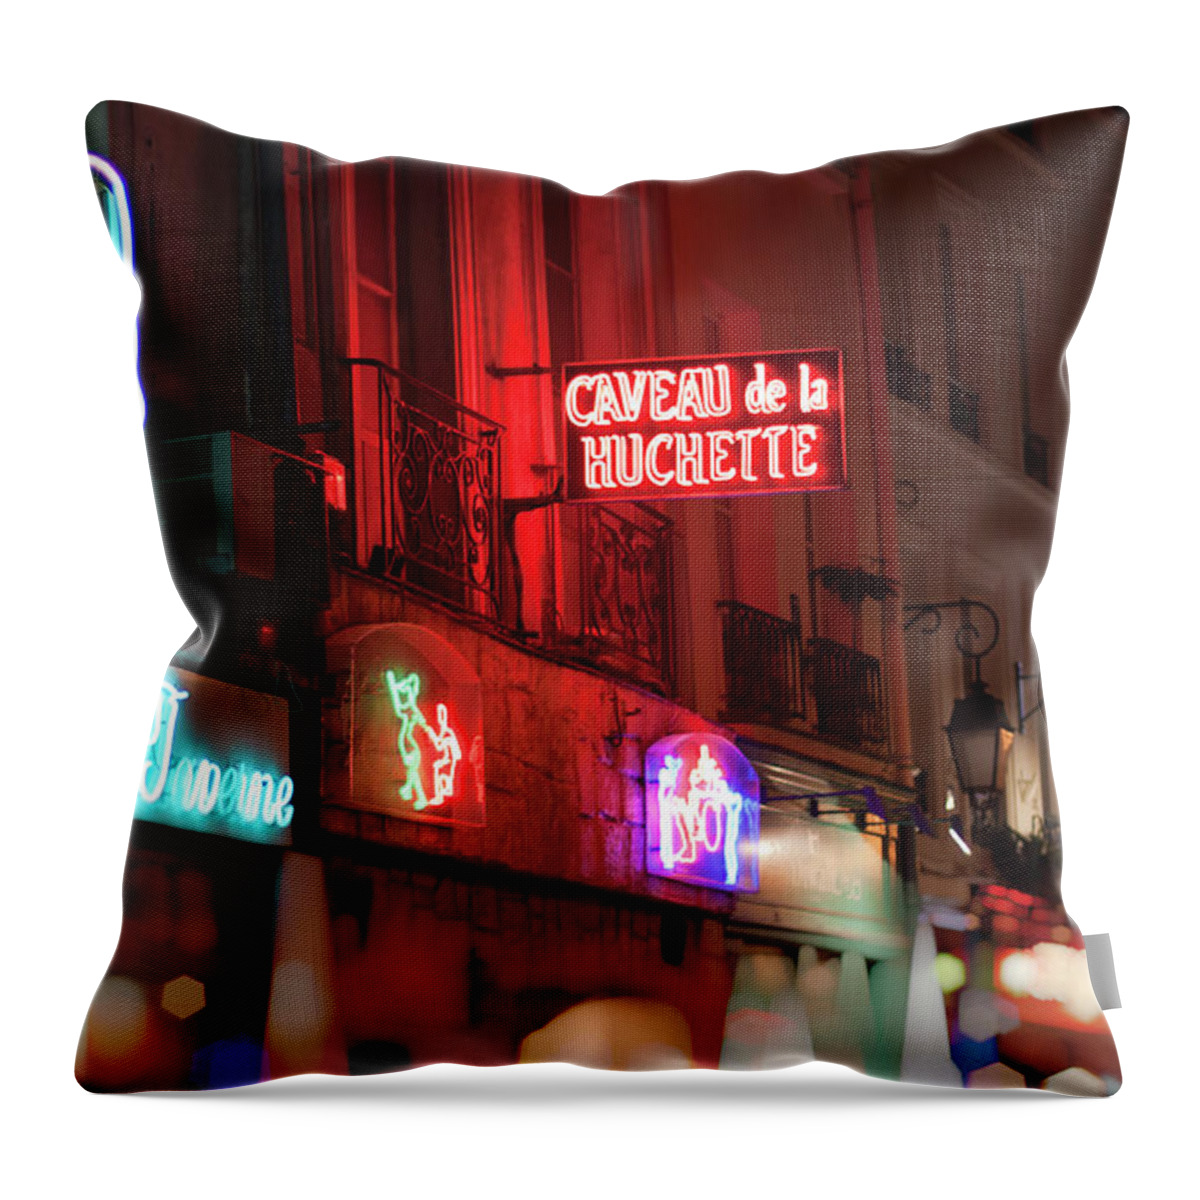 Neon Signs Throw Pillow featuring the photograph Caveau de la Huchette - Paris, France by Melanie Alexandra Price